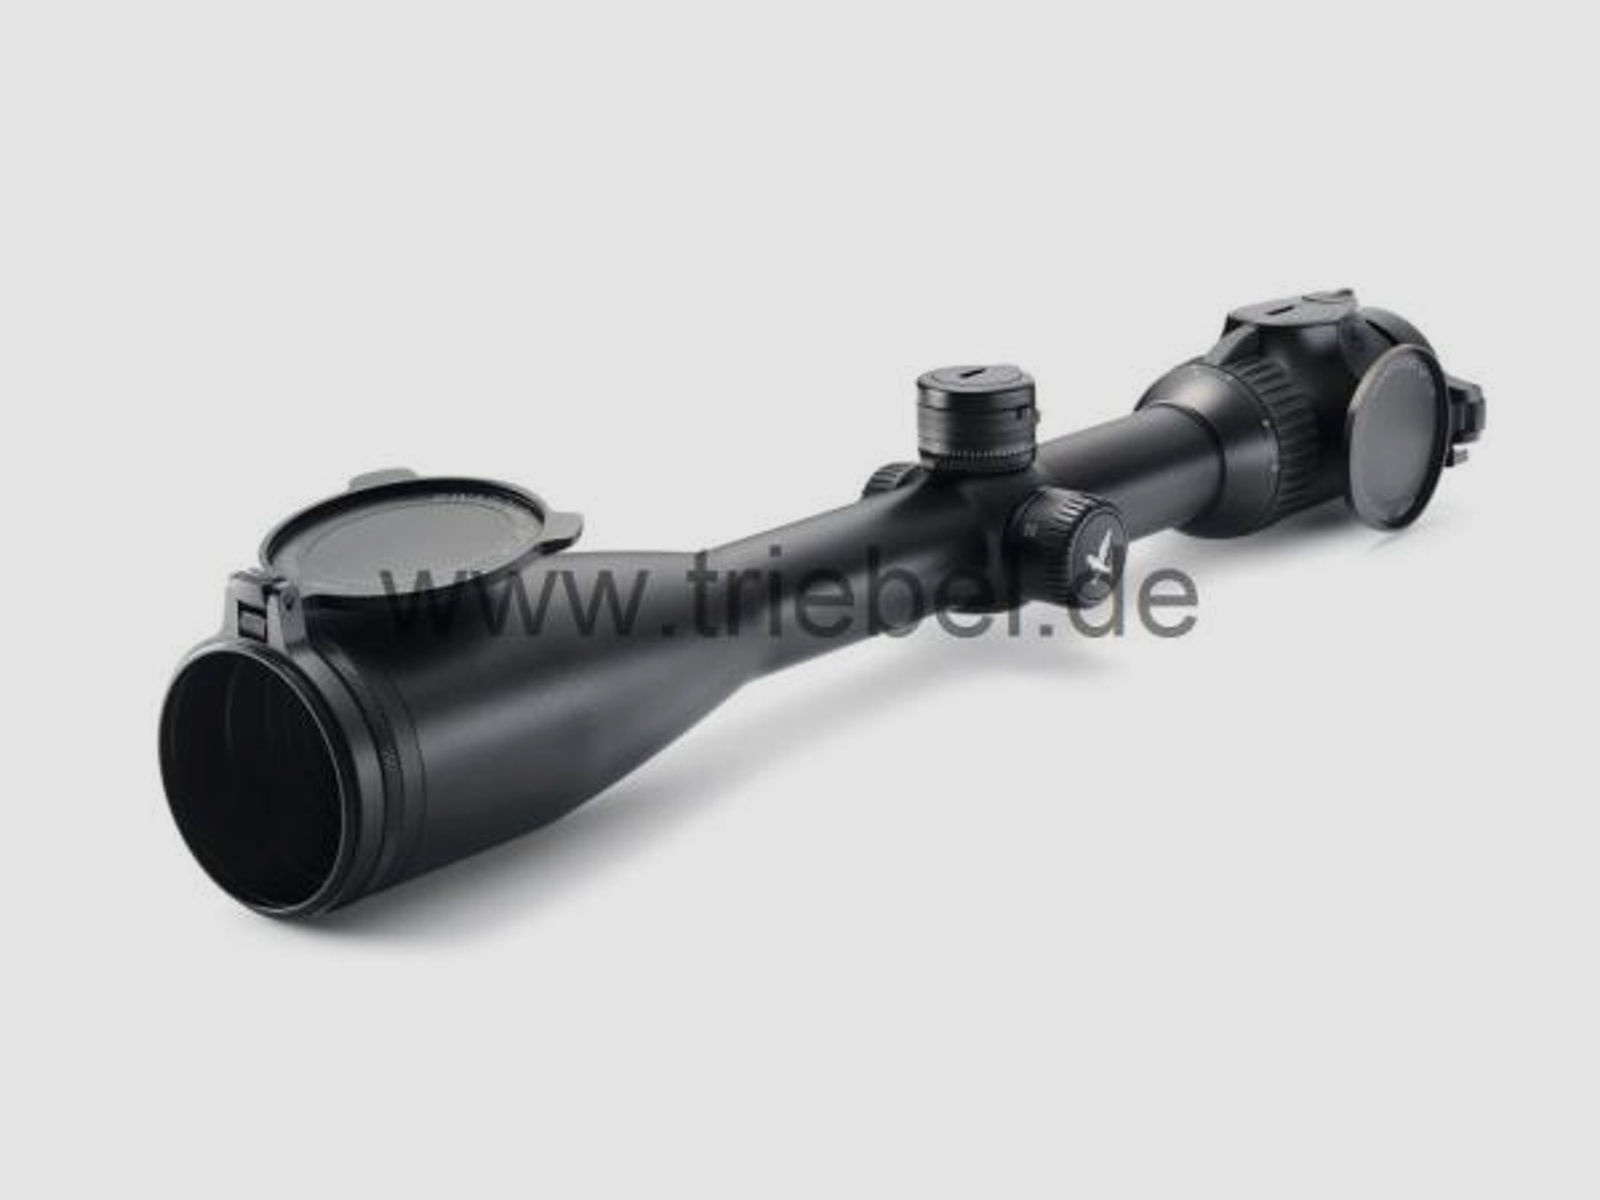 SWAROVSKI Zubehör für Zielfernrohre Objektivdeckel 63 mm SLP-O-63 f. dS 5-25x52